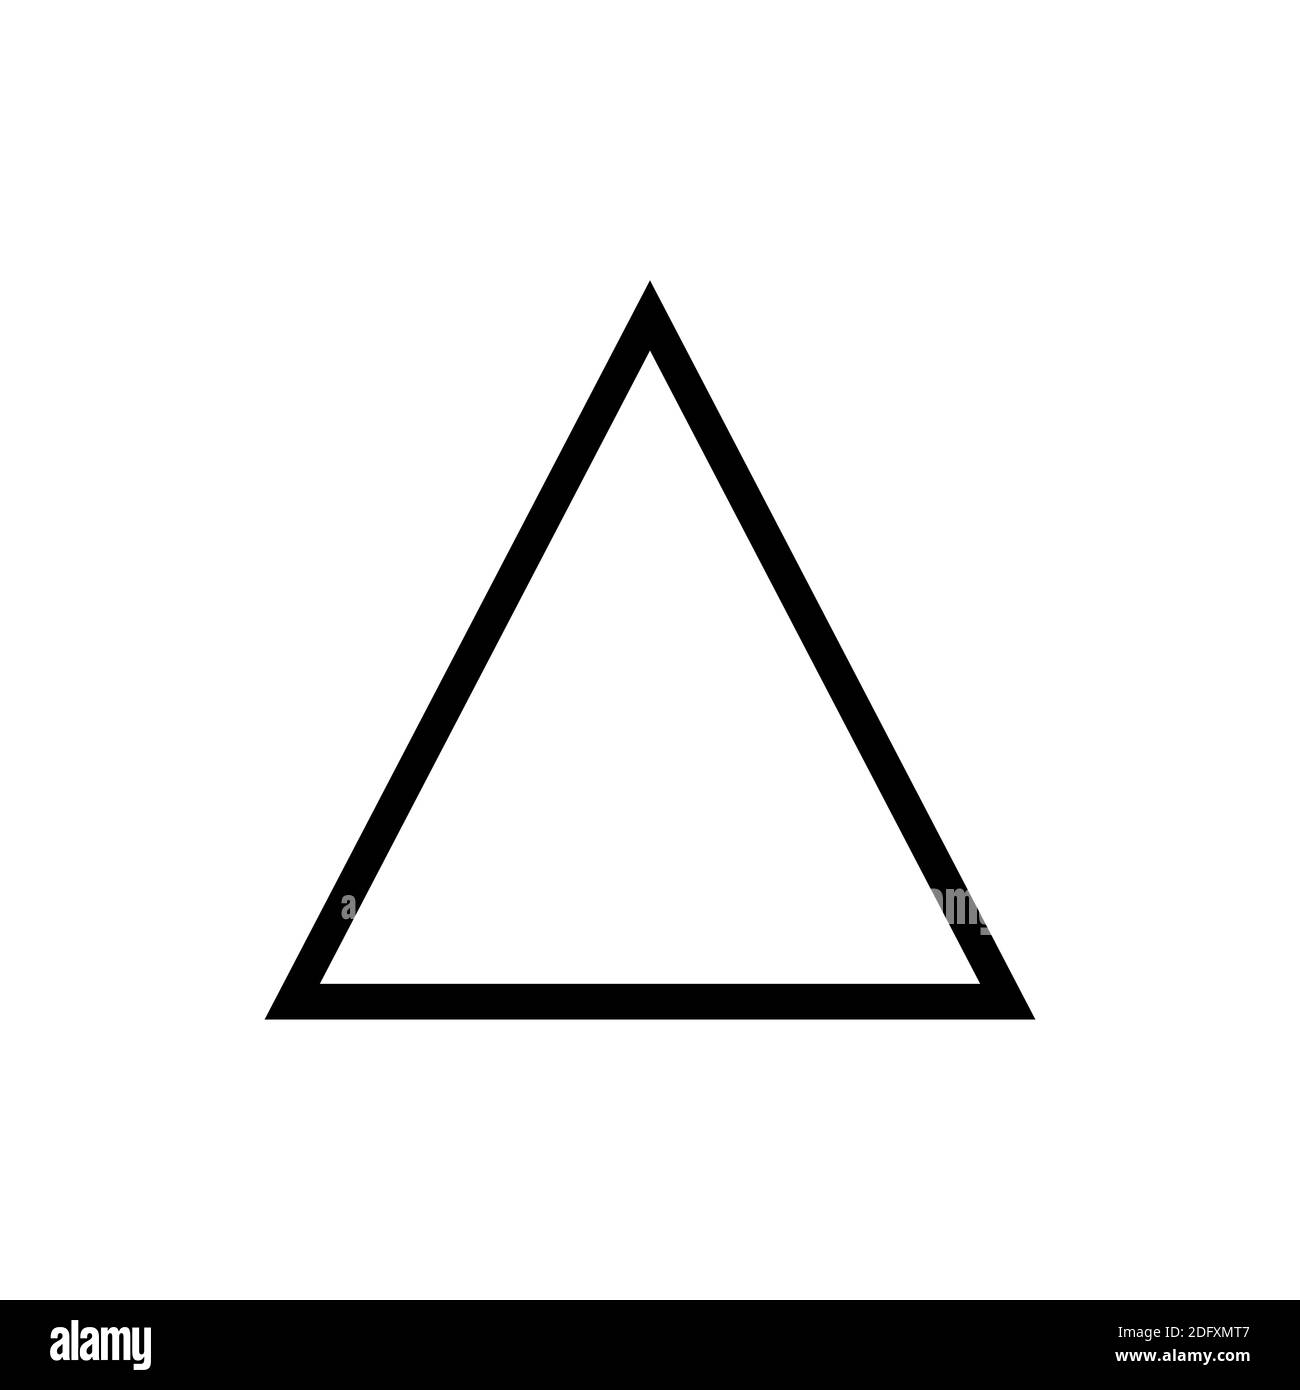 Das Symbol des Feuers, eines der Symbole der Alchemie. Schwarz-weißes Feuersymbol. Stockfoto